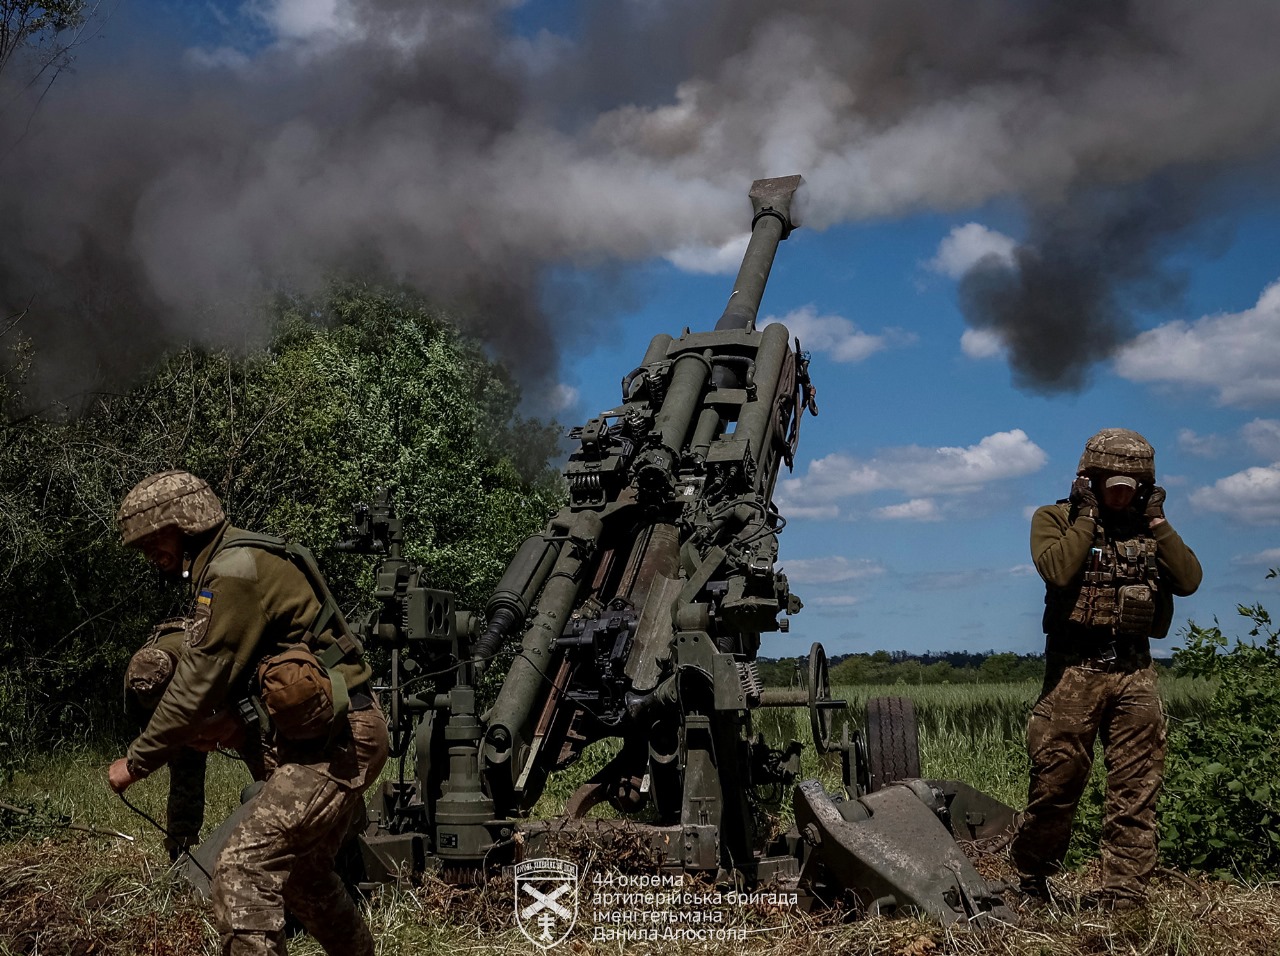 صور الجيش الاوكراني في الحرب الروسية-الاوكرانية.........متجدد GMGVa5vWQAATQVn?format=jpg&name=large